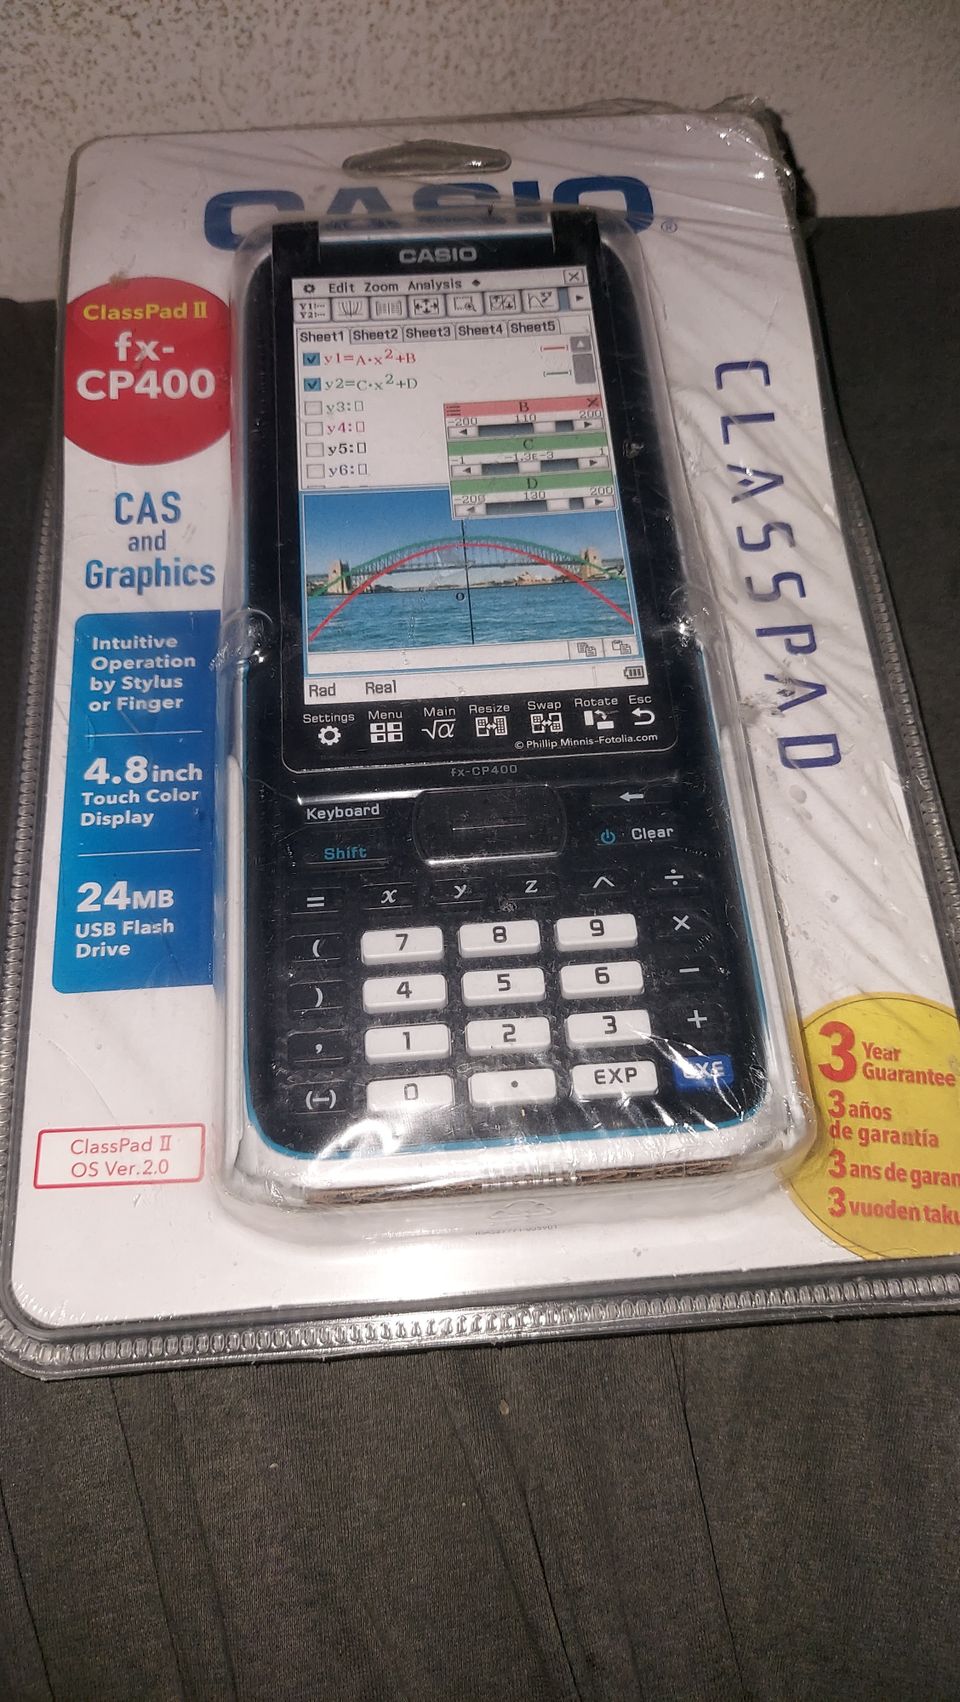 Casio ClassPad II fx-CP400